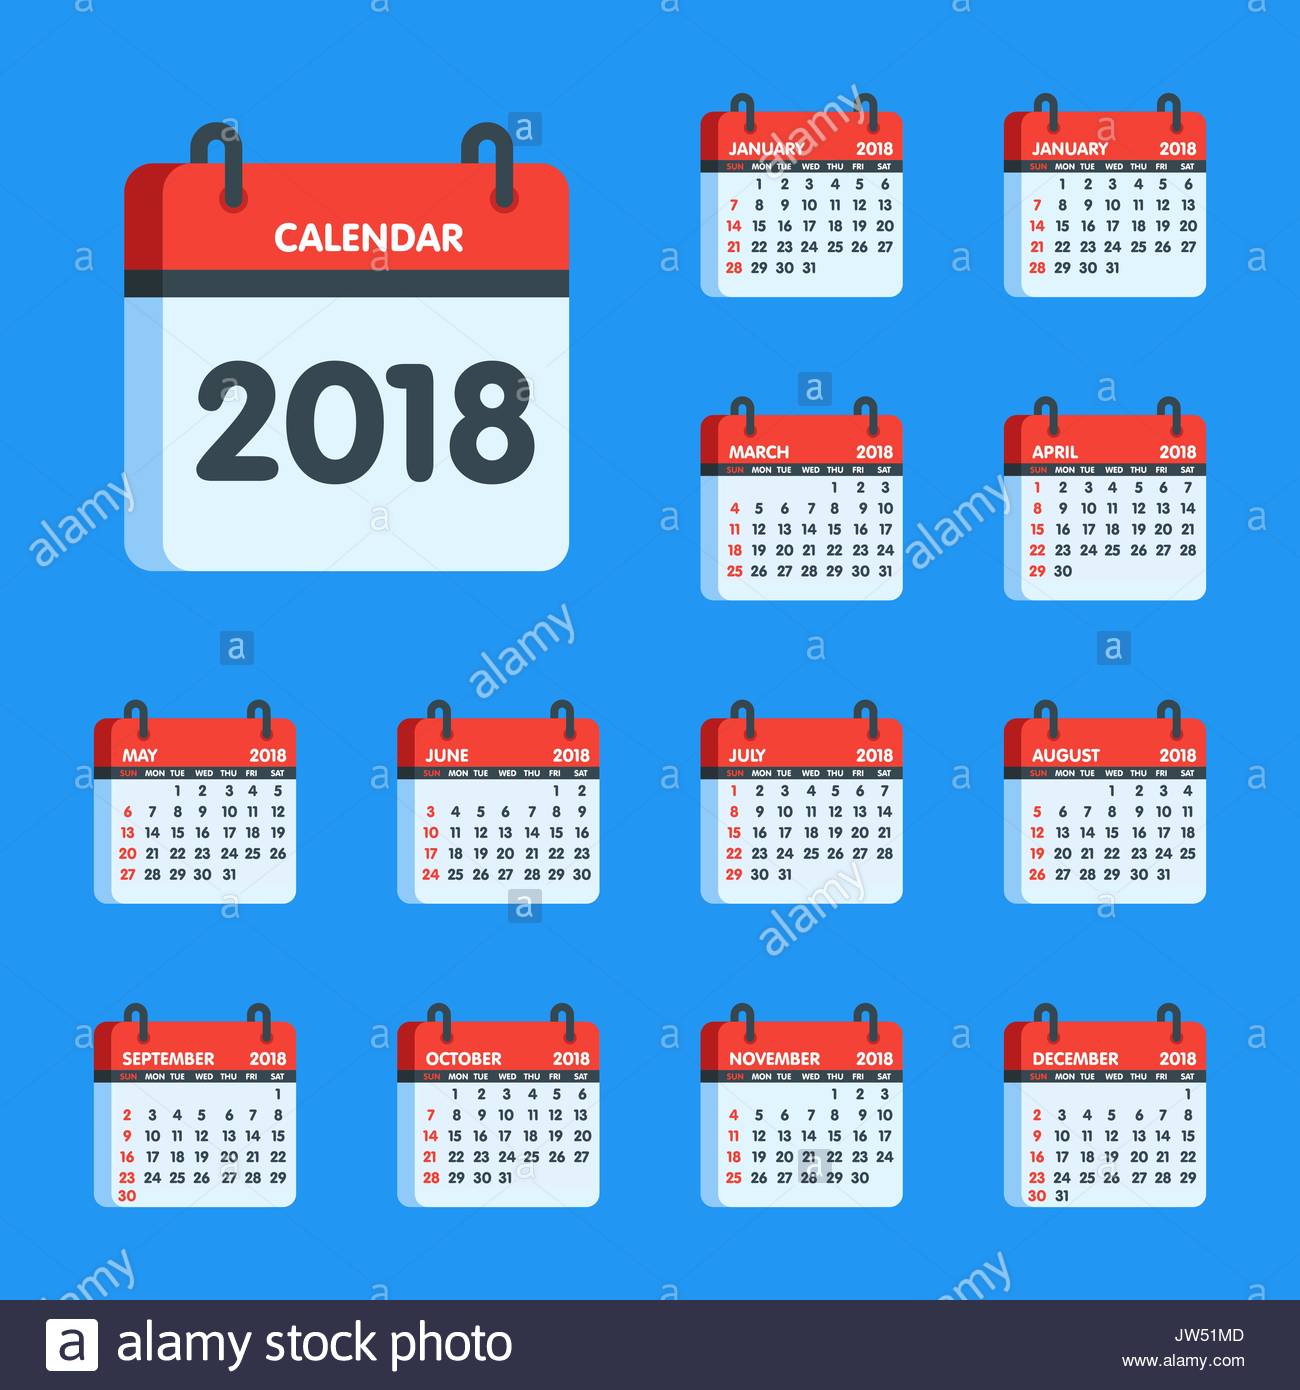 calendar clipart april 2018